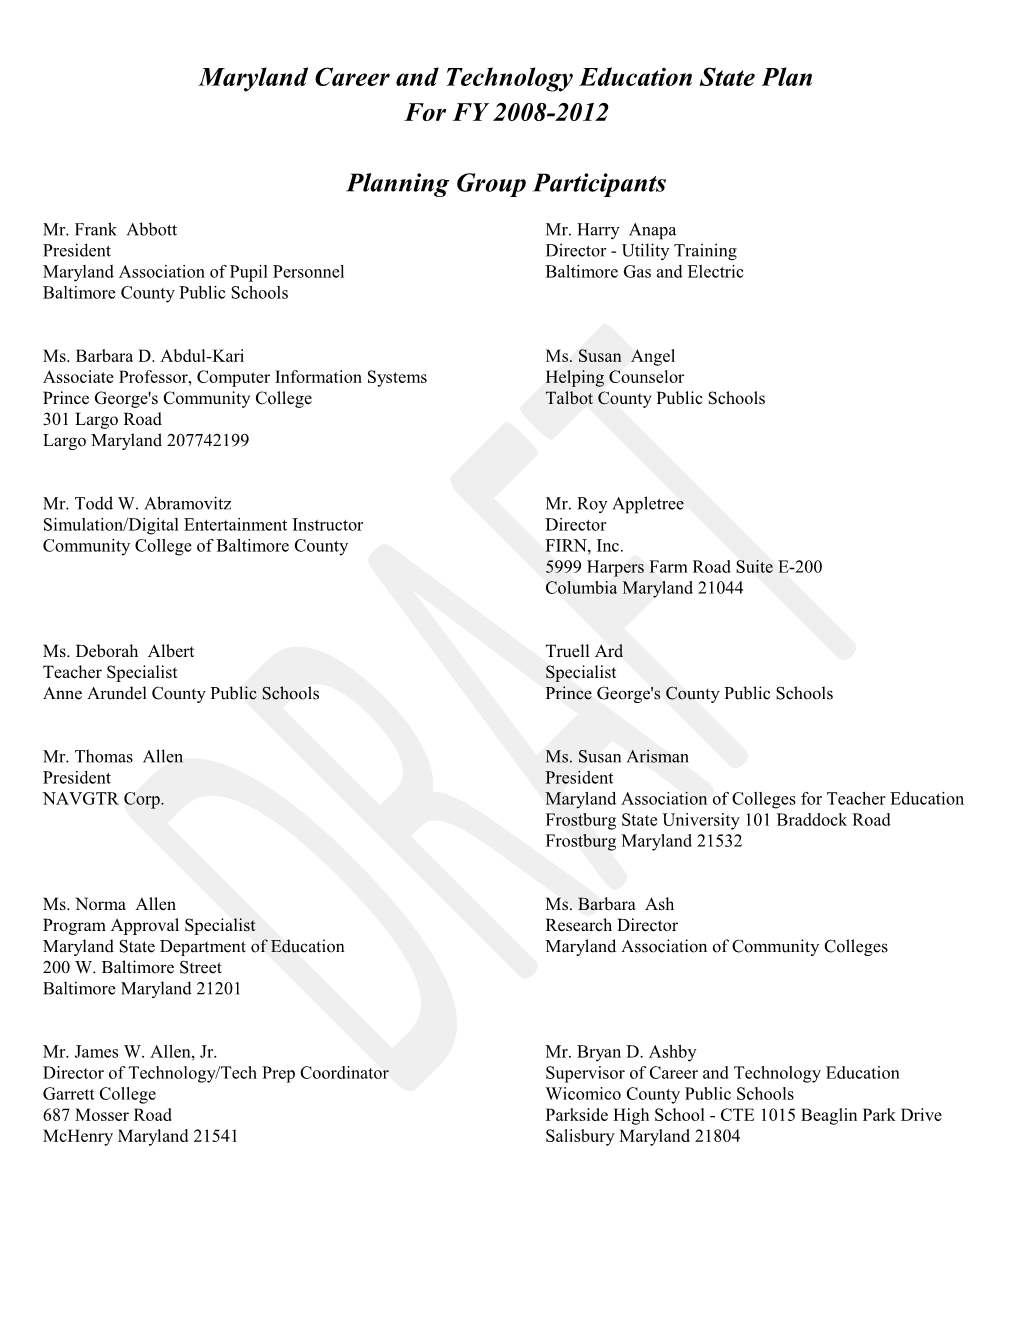 Planning Group Participants